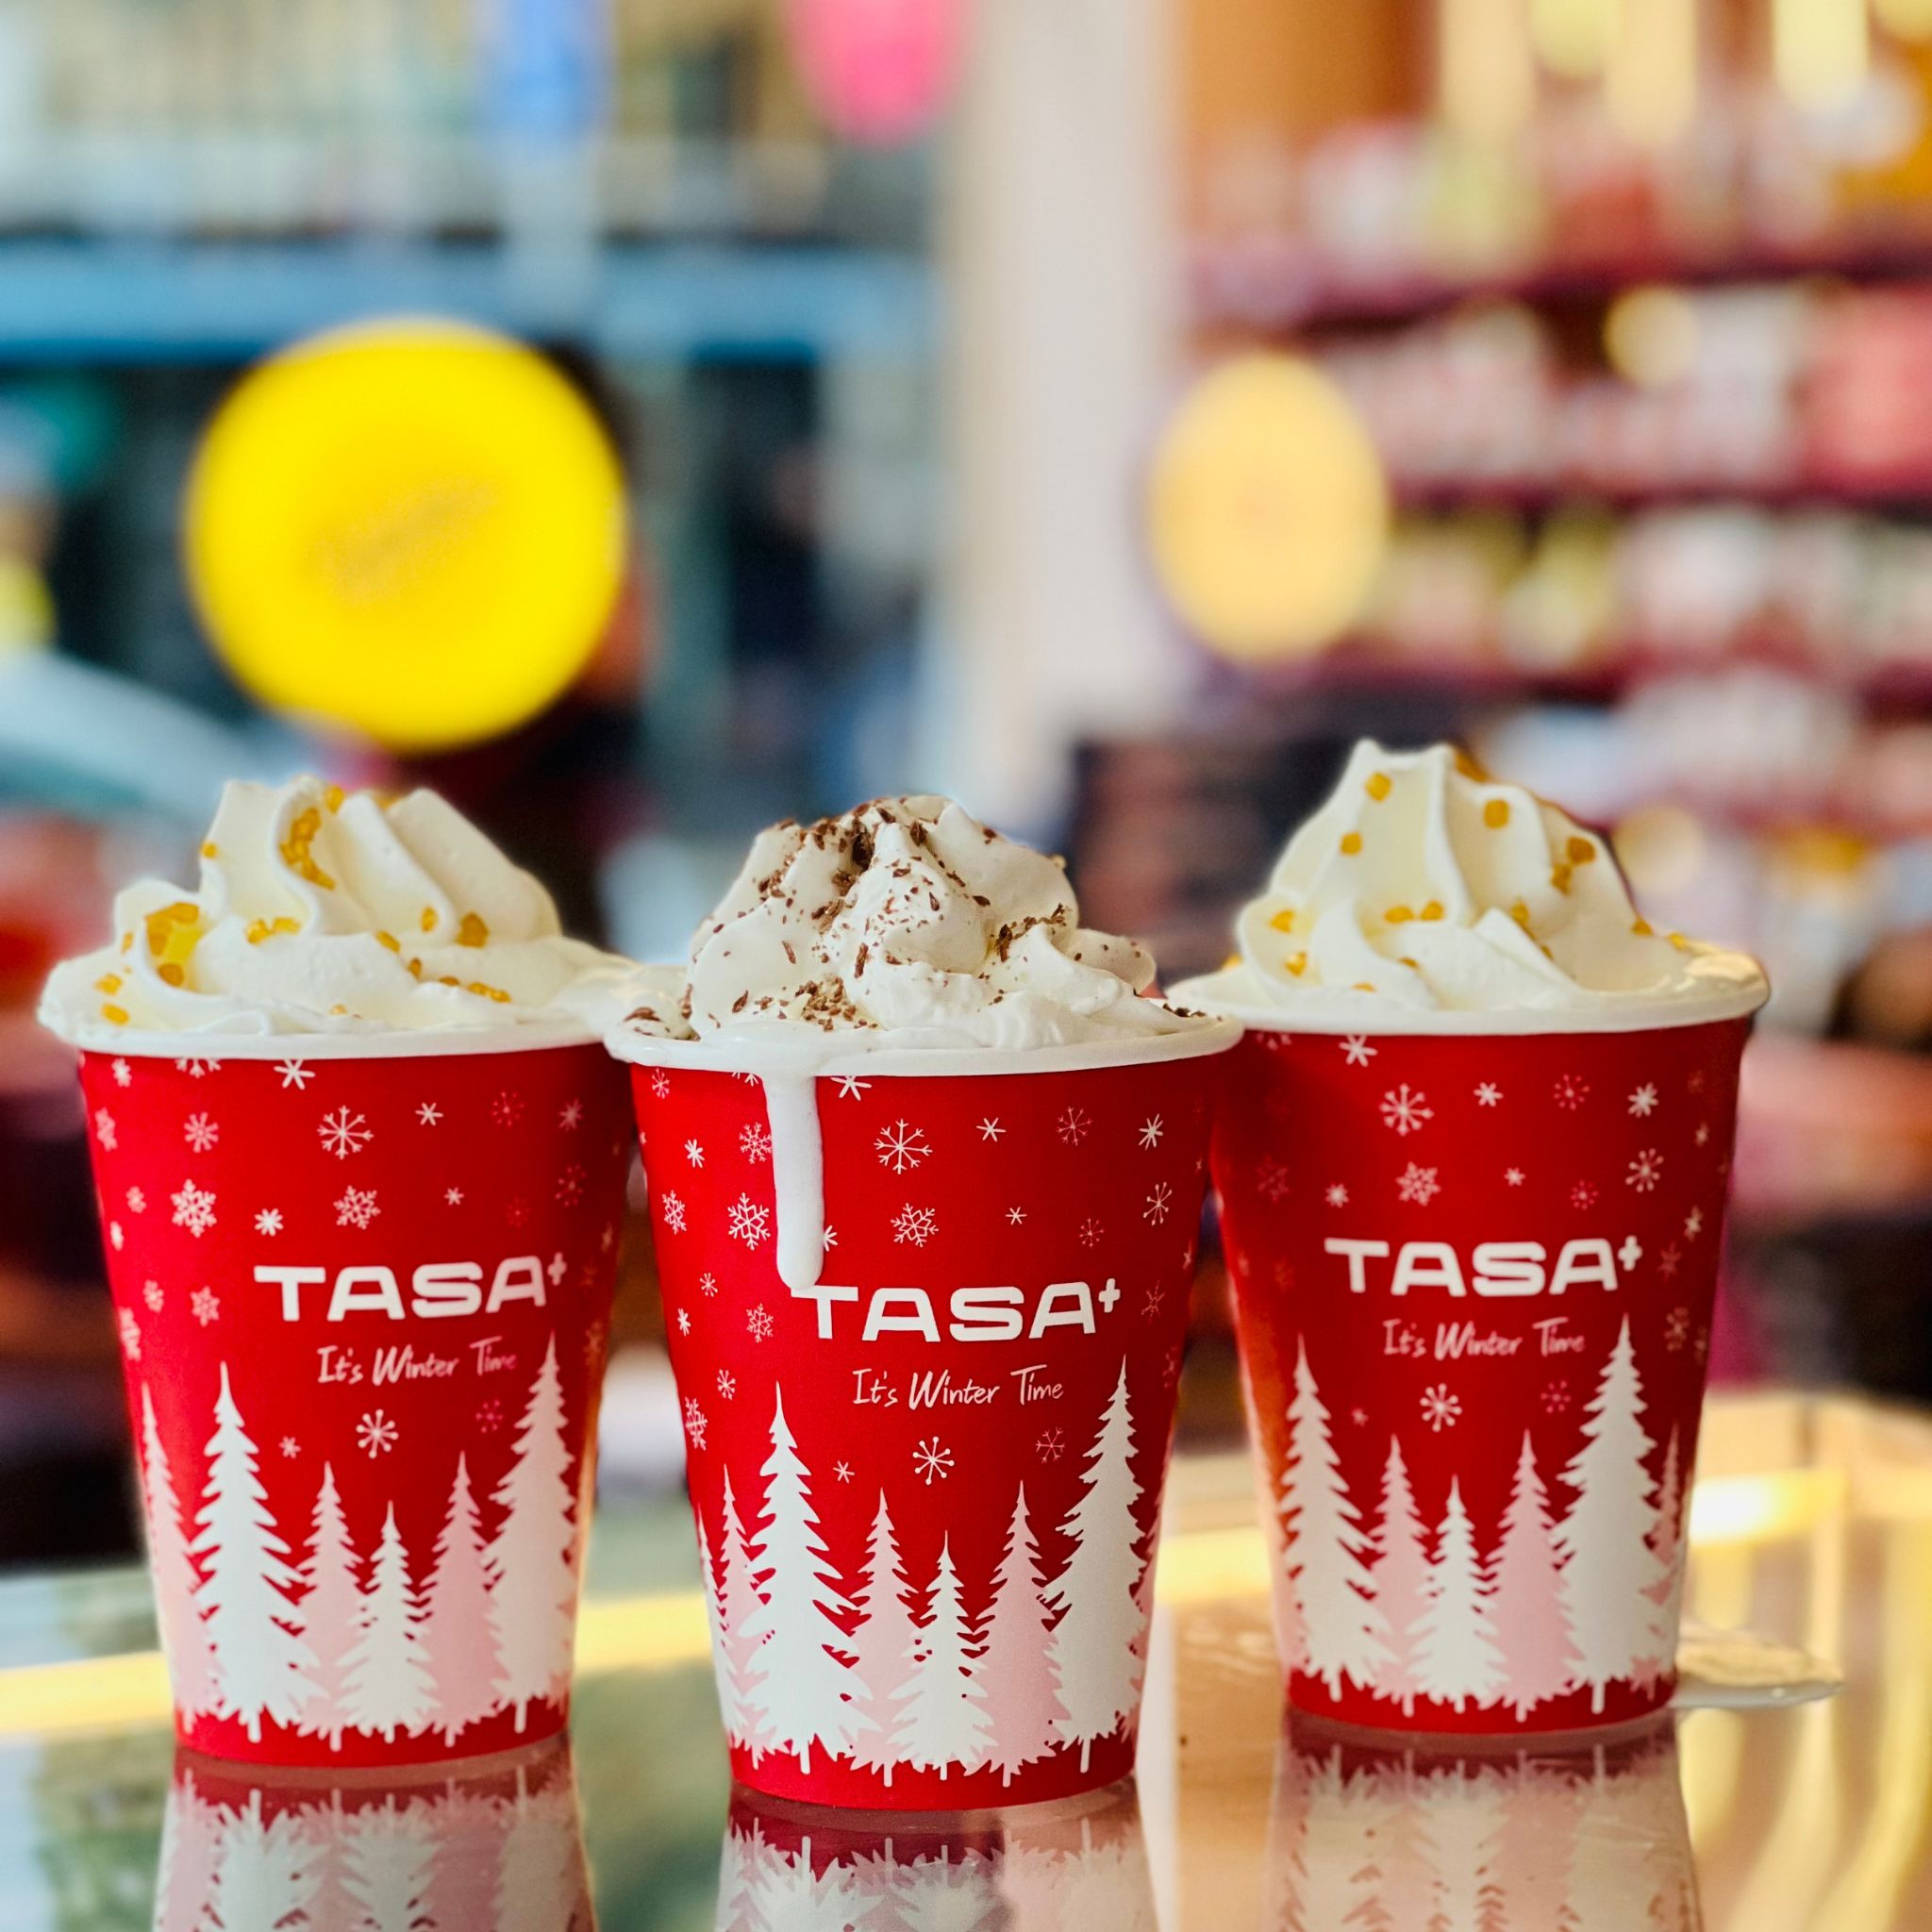 חברת ״טסה הבית של הממתקים״ פותחת רשת חנויות בוטיק חווייתיות  של בייקרי, בית קפה, שוקולדים וממתקים מהמותגים המובילים בעולם תחת השם:  TASA +